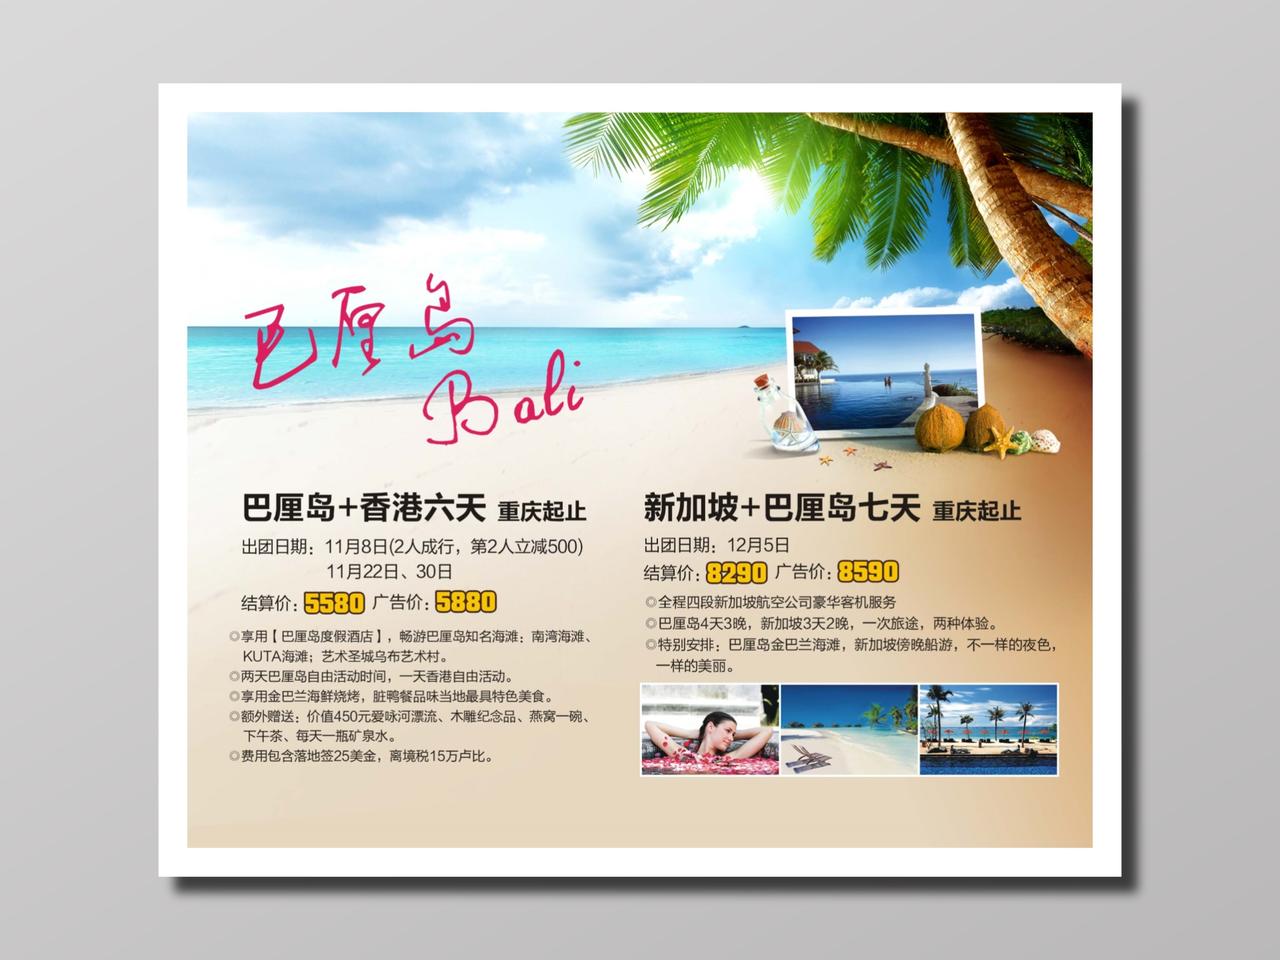 旅游巴厘岛团游安排报价风景晴朗蓝色沙黄跟团游岛屿游海报设计